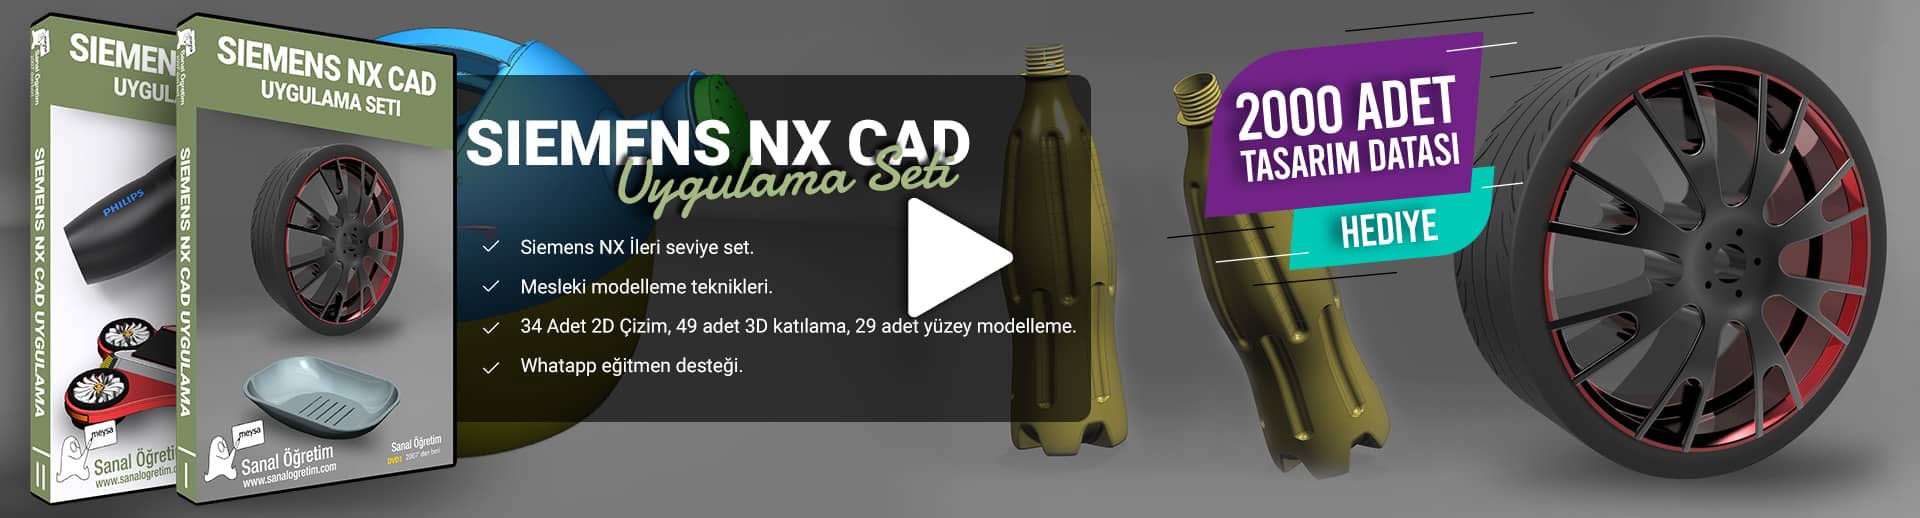 Siemens NX CAD Uygulama Seti